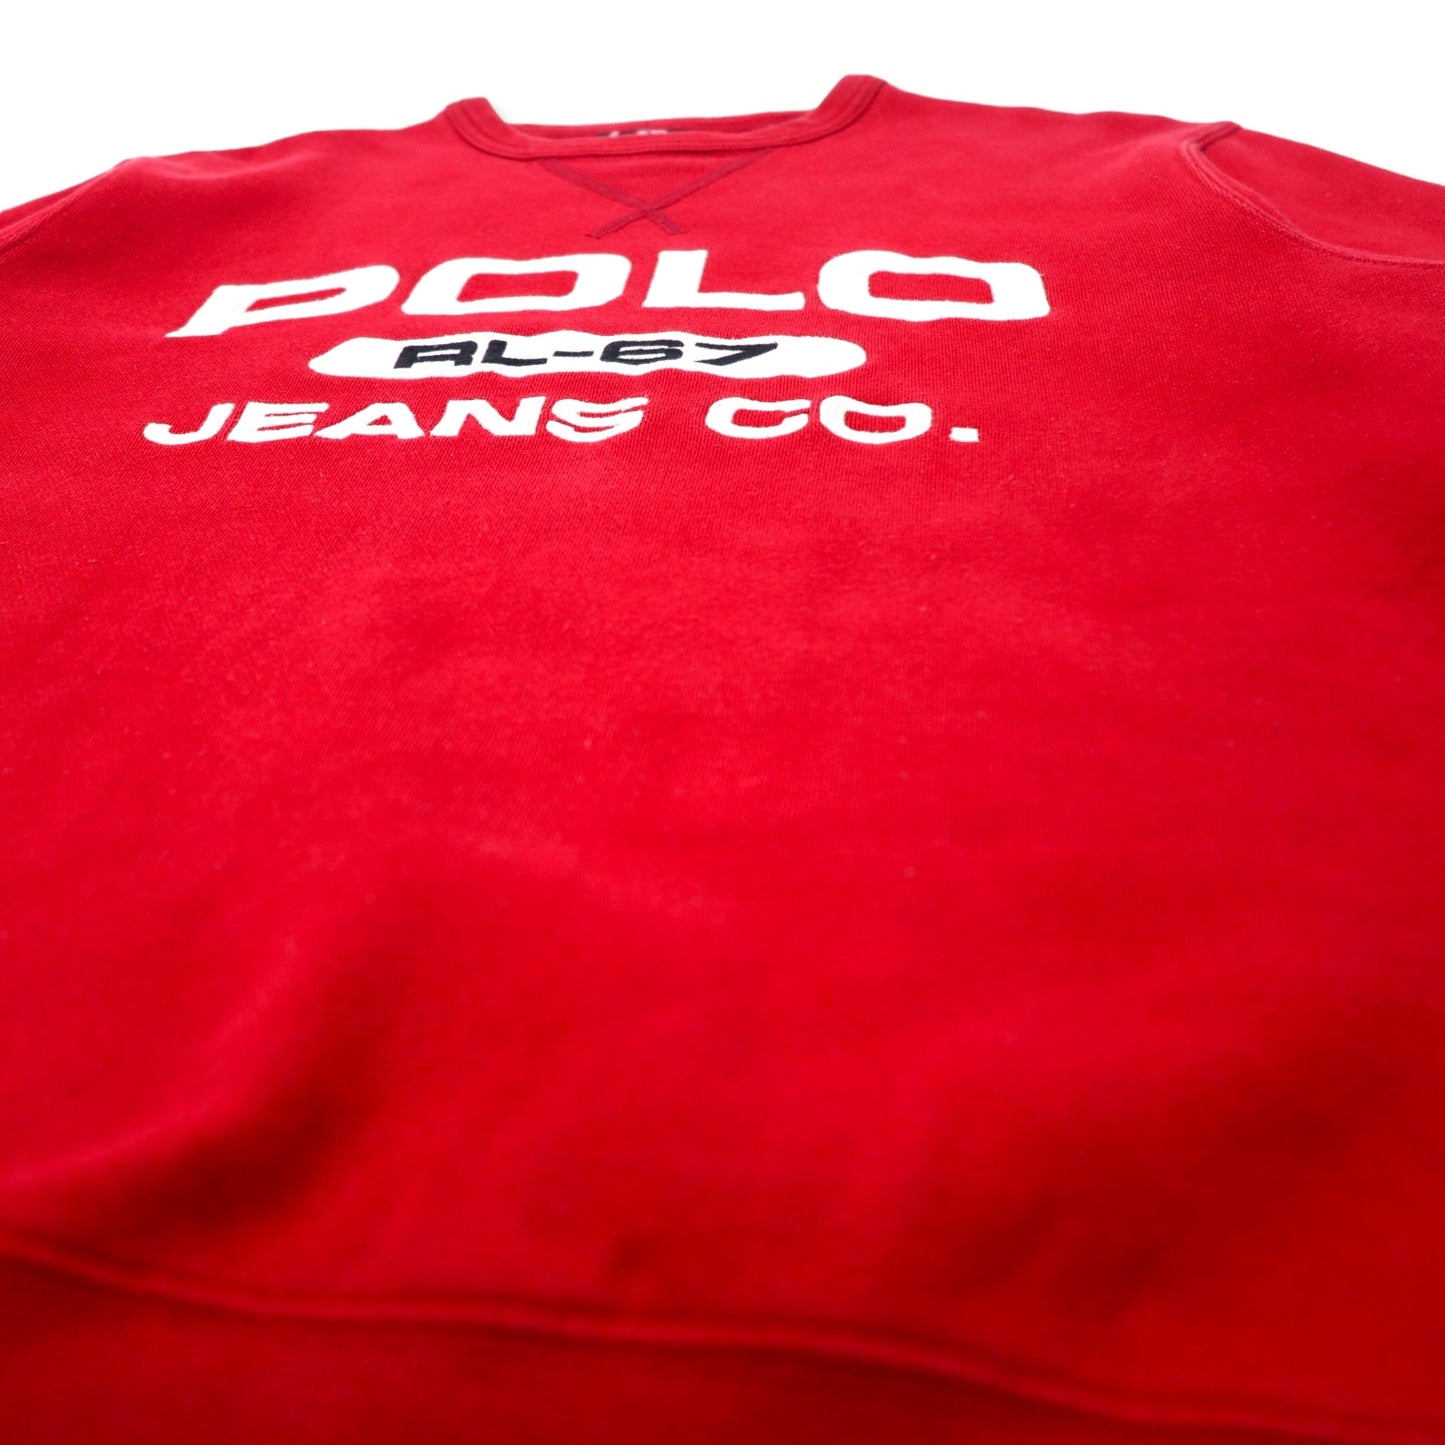 POLO JEANS COMPANY RALPH LAUREN 90年代 ロゴ刺繍 スウェット S レッド コットン